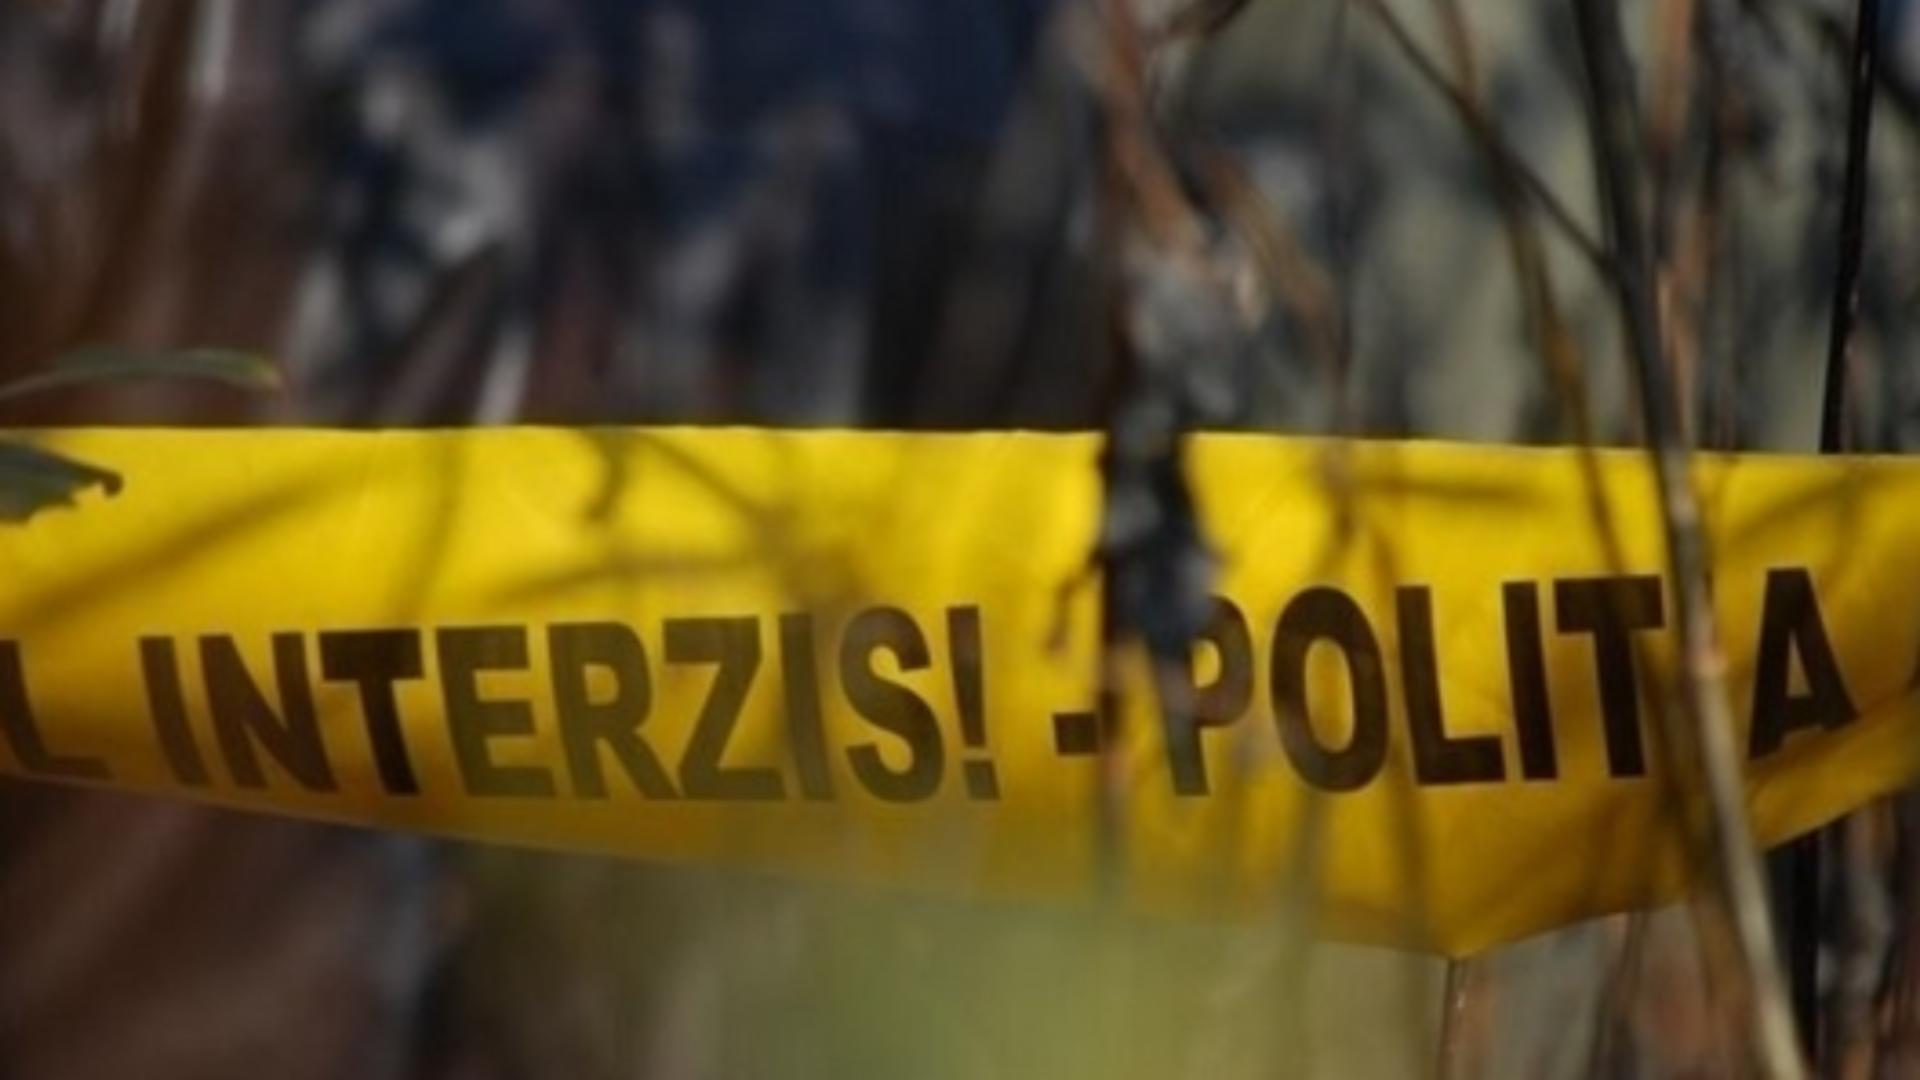 Poliţişti, jandarmi şi voluntari, mobilizaţi pentru găsirea unui copil de 9 ani dispărut în zona mănăstirii Ciolanu din judeţul Buzău